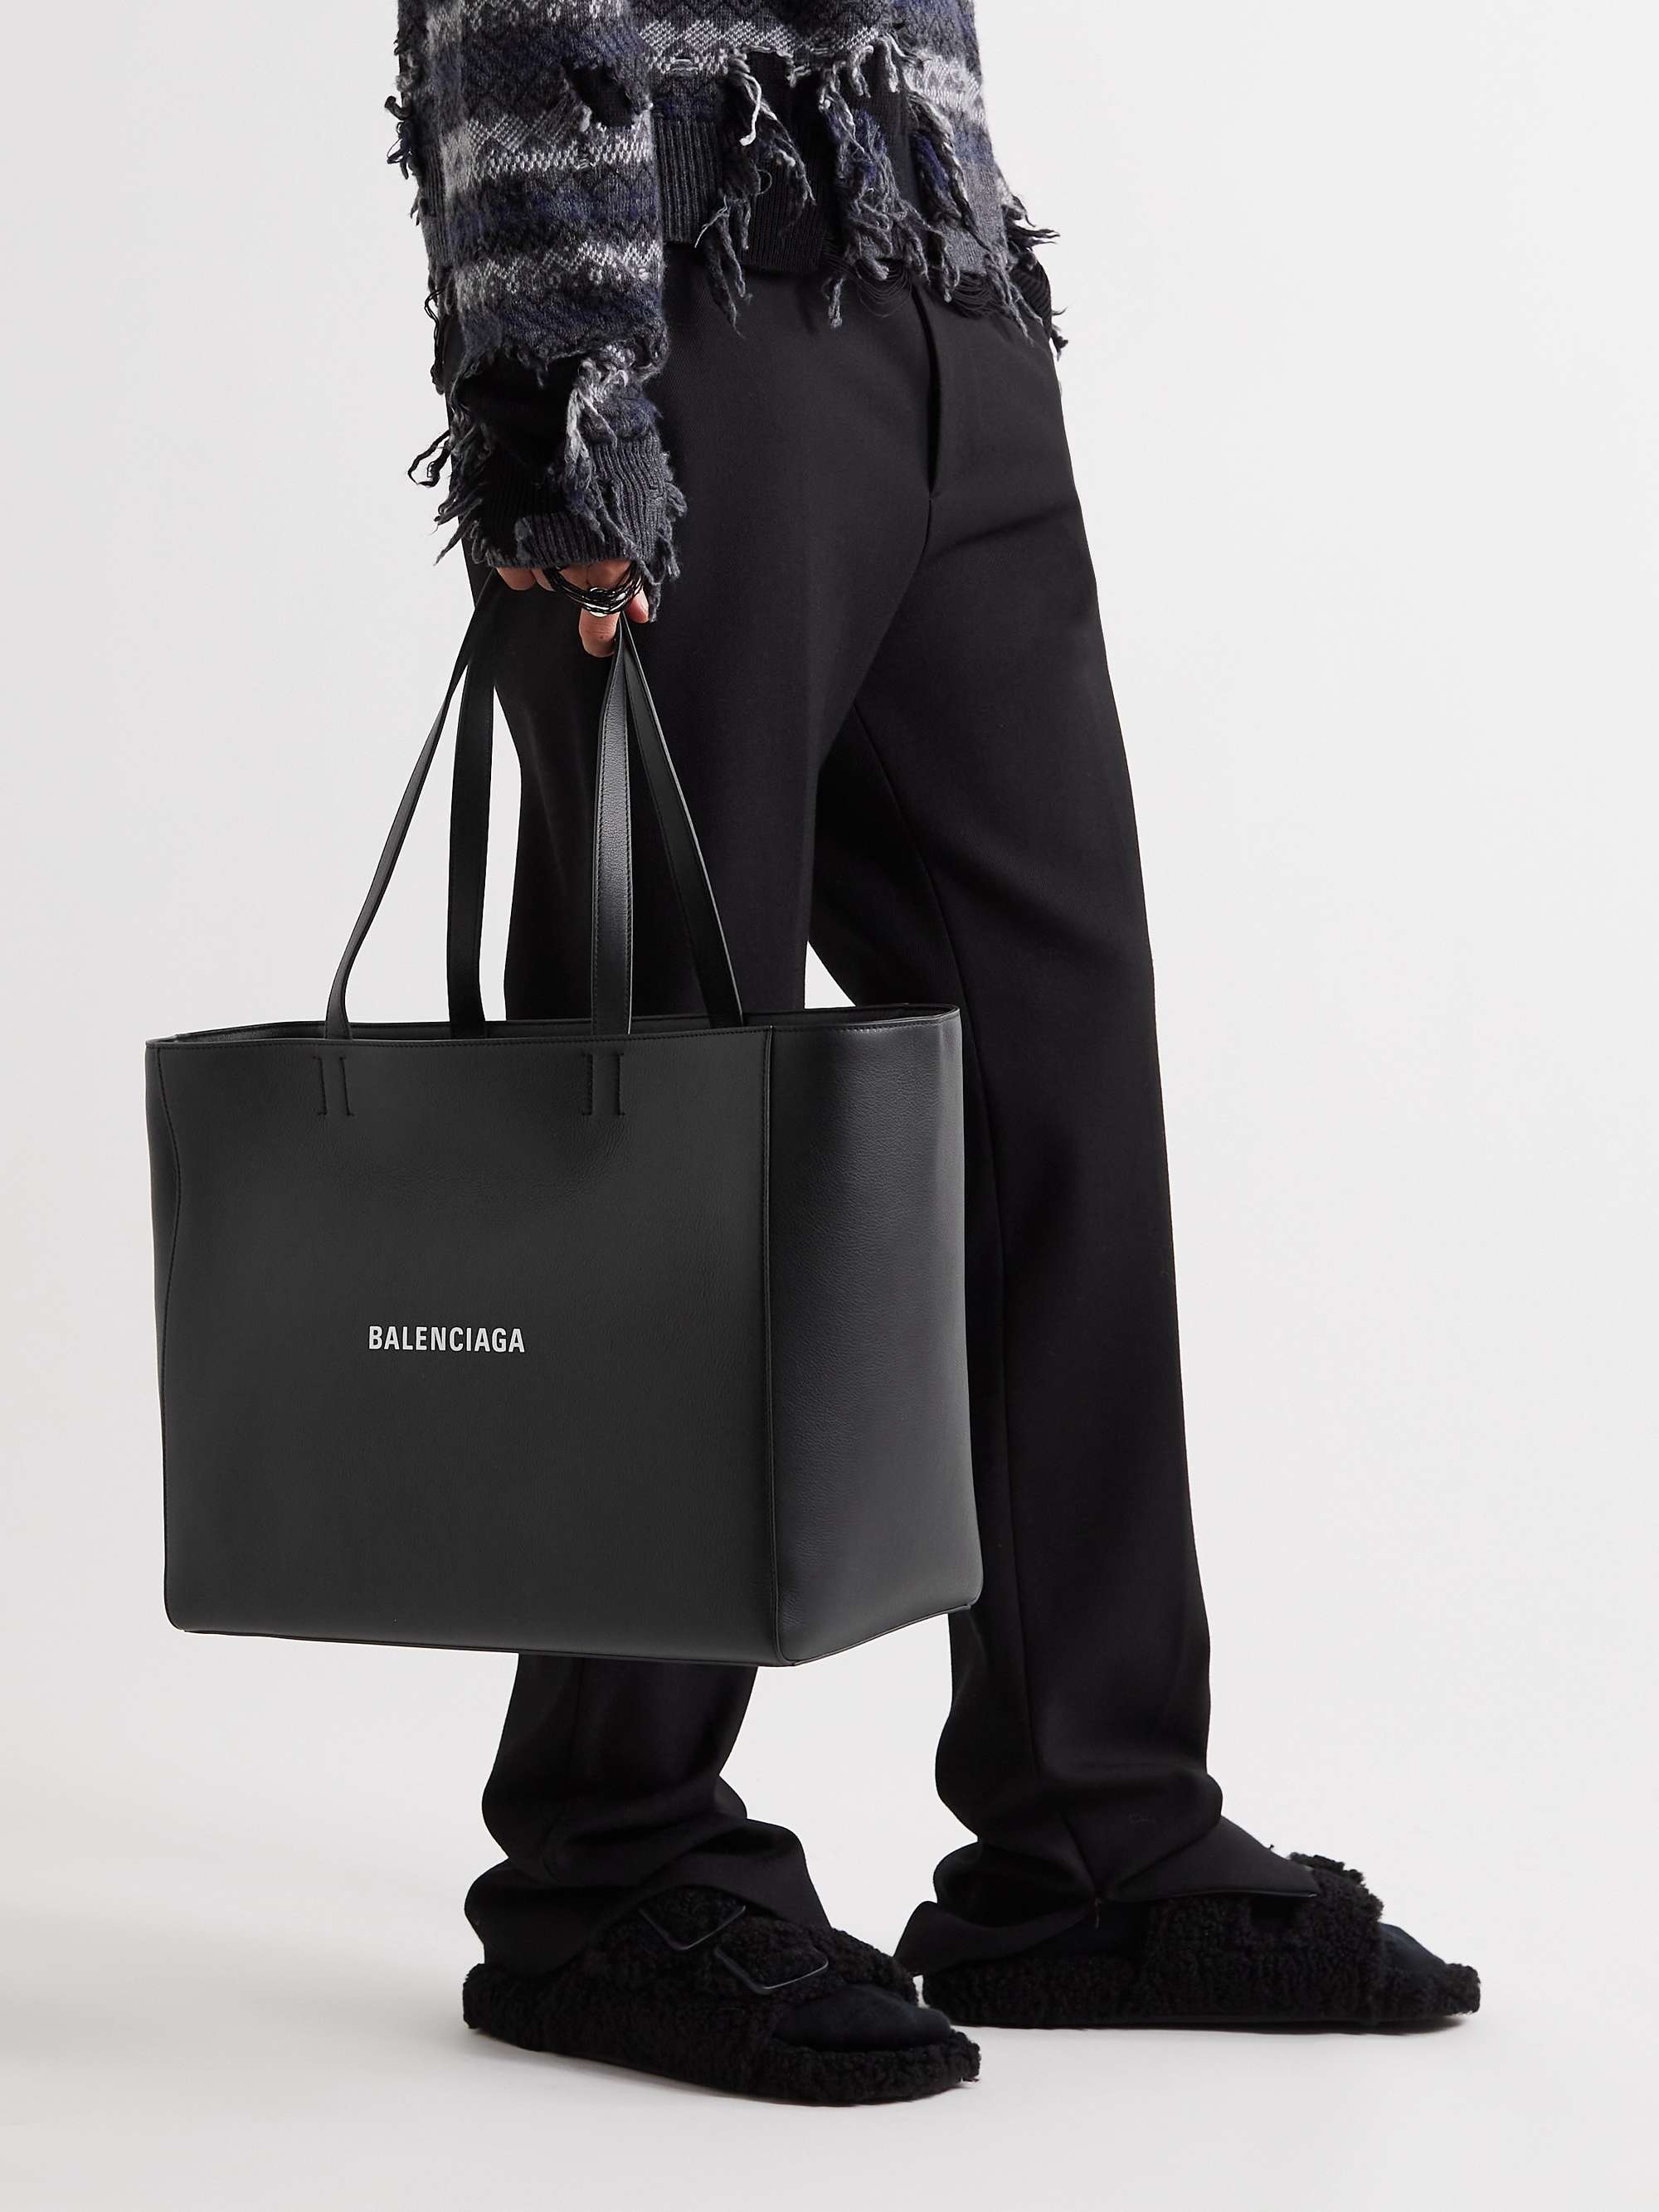 BALENCIAGA Logo-Print Leather Bag for Men | MR PORTER